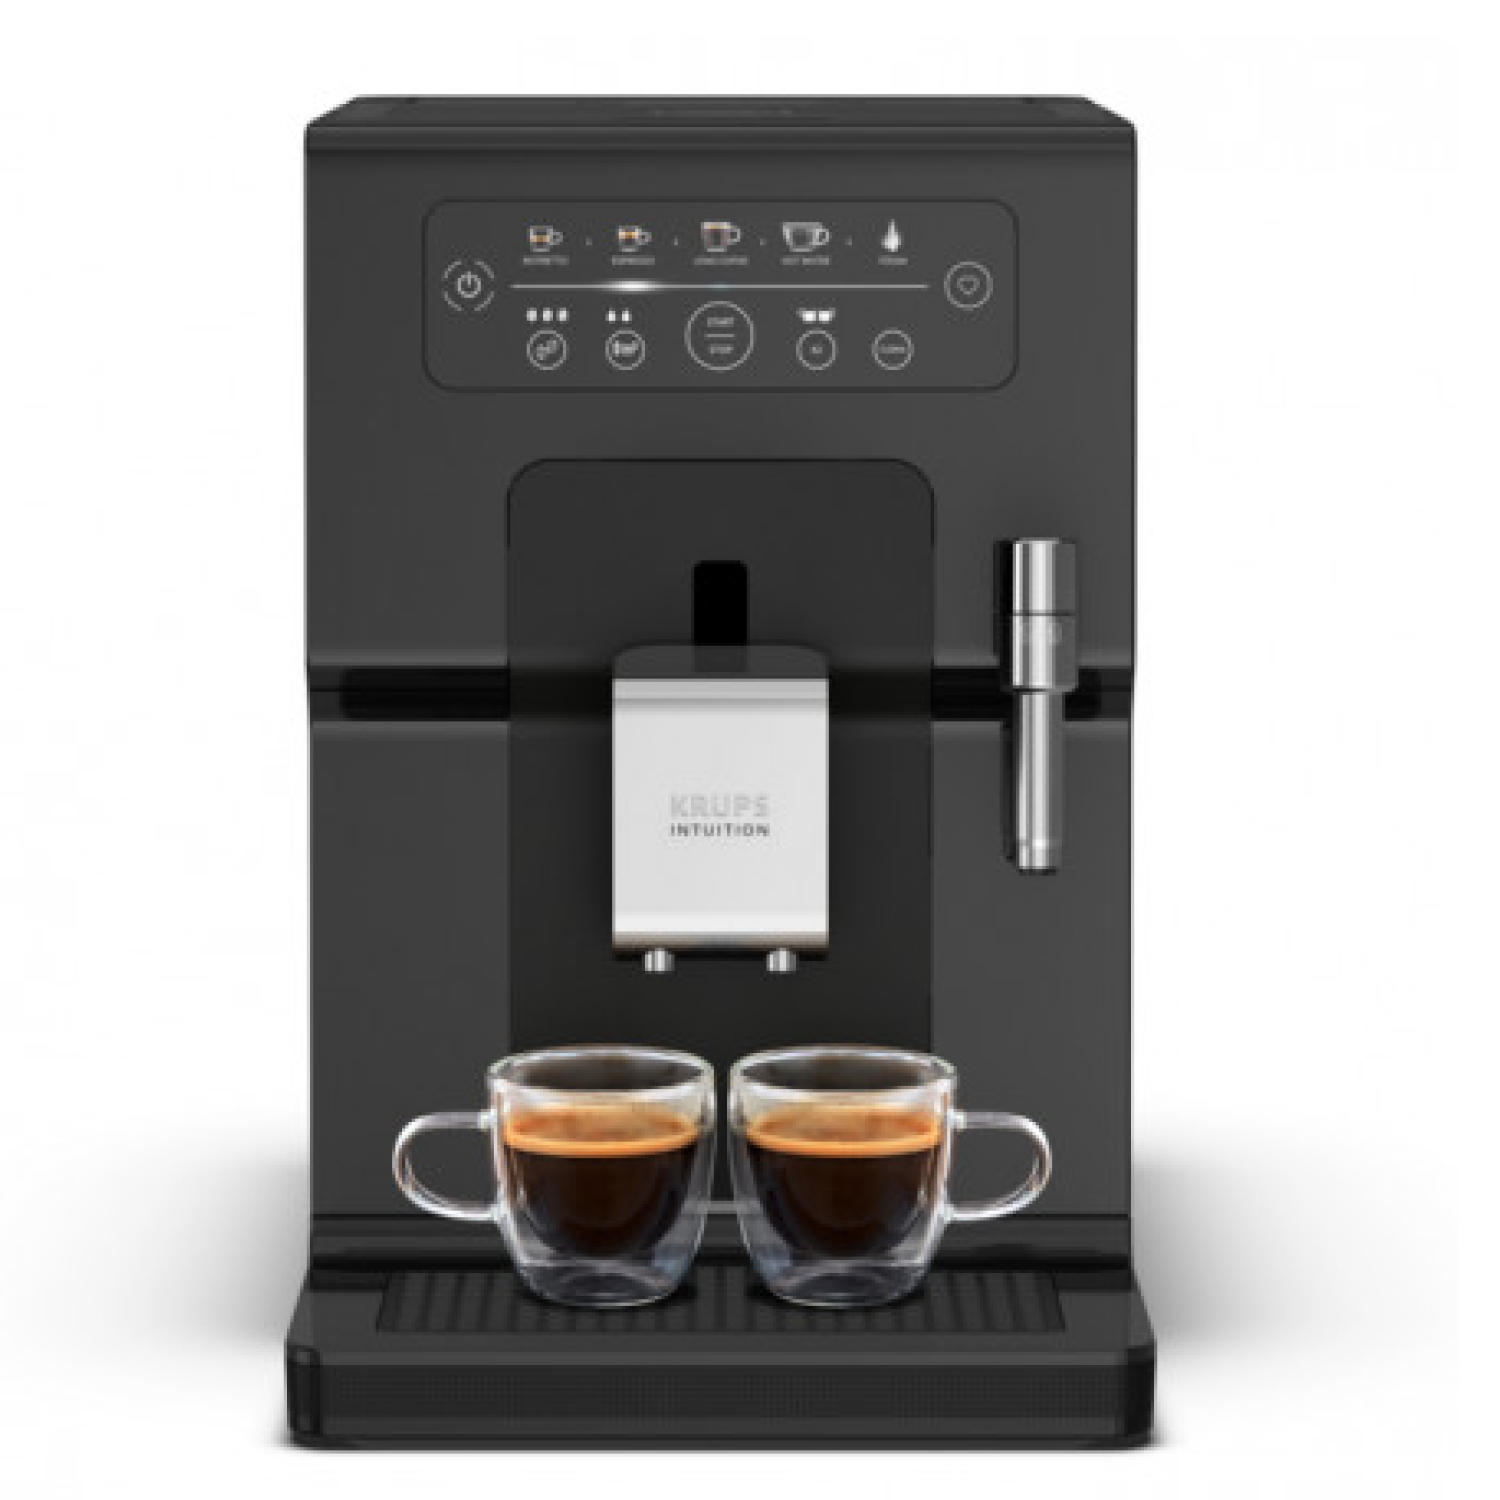 Автоматическая кофемашина Krups Intuition Essential EA870810, цвет черный - фото 1